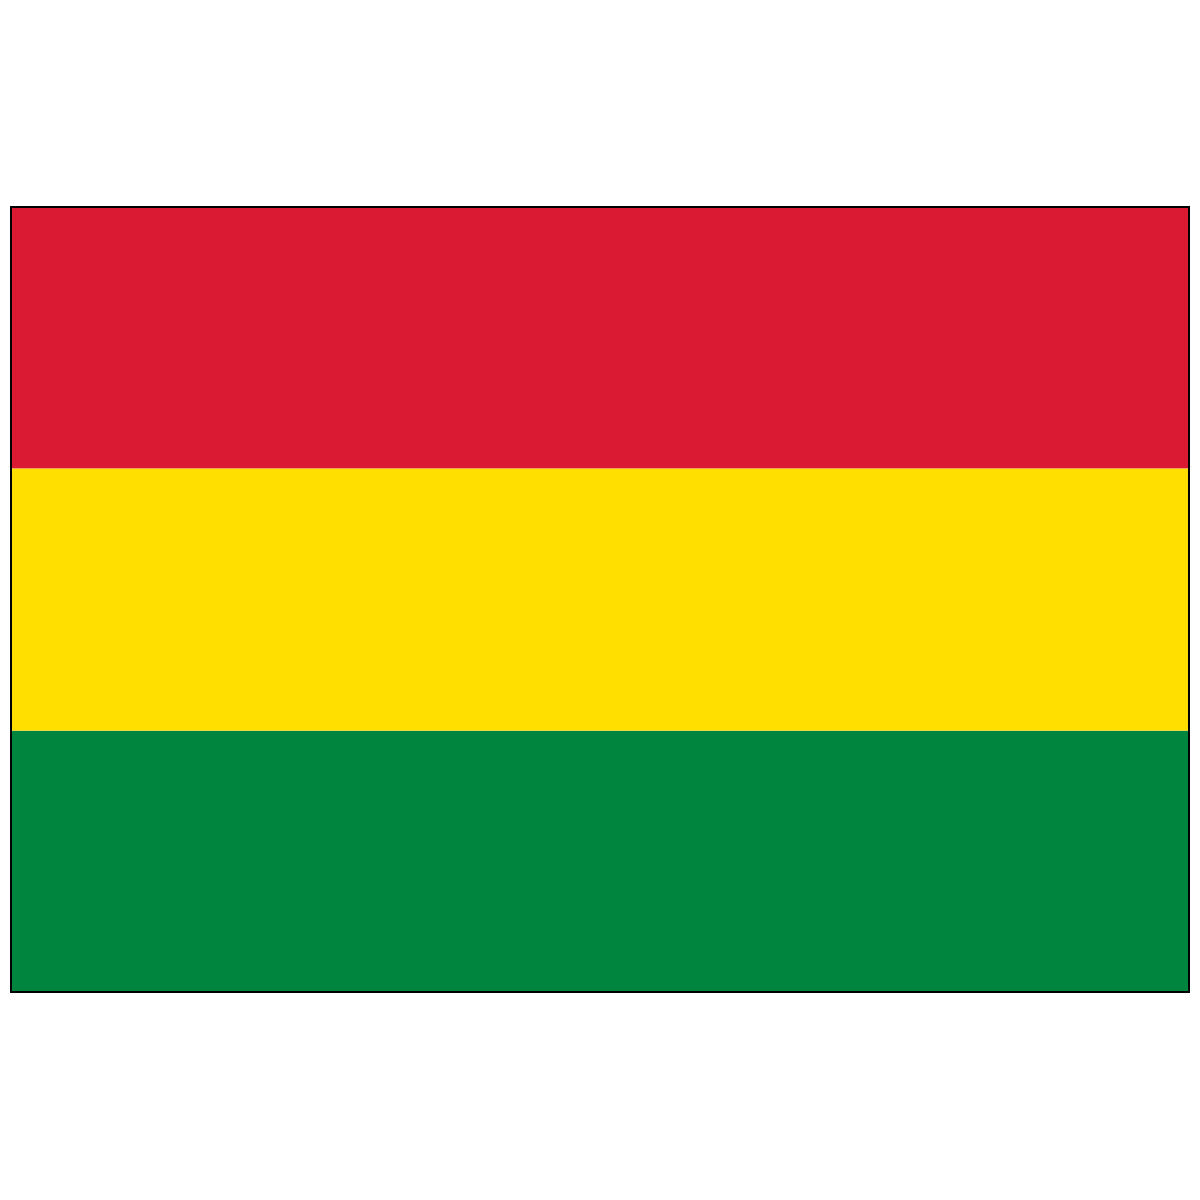 Bolivia - World Flag